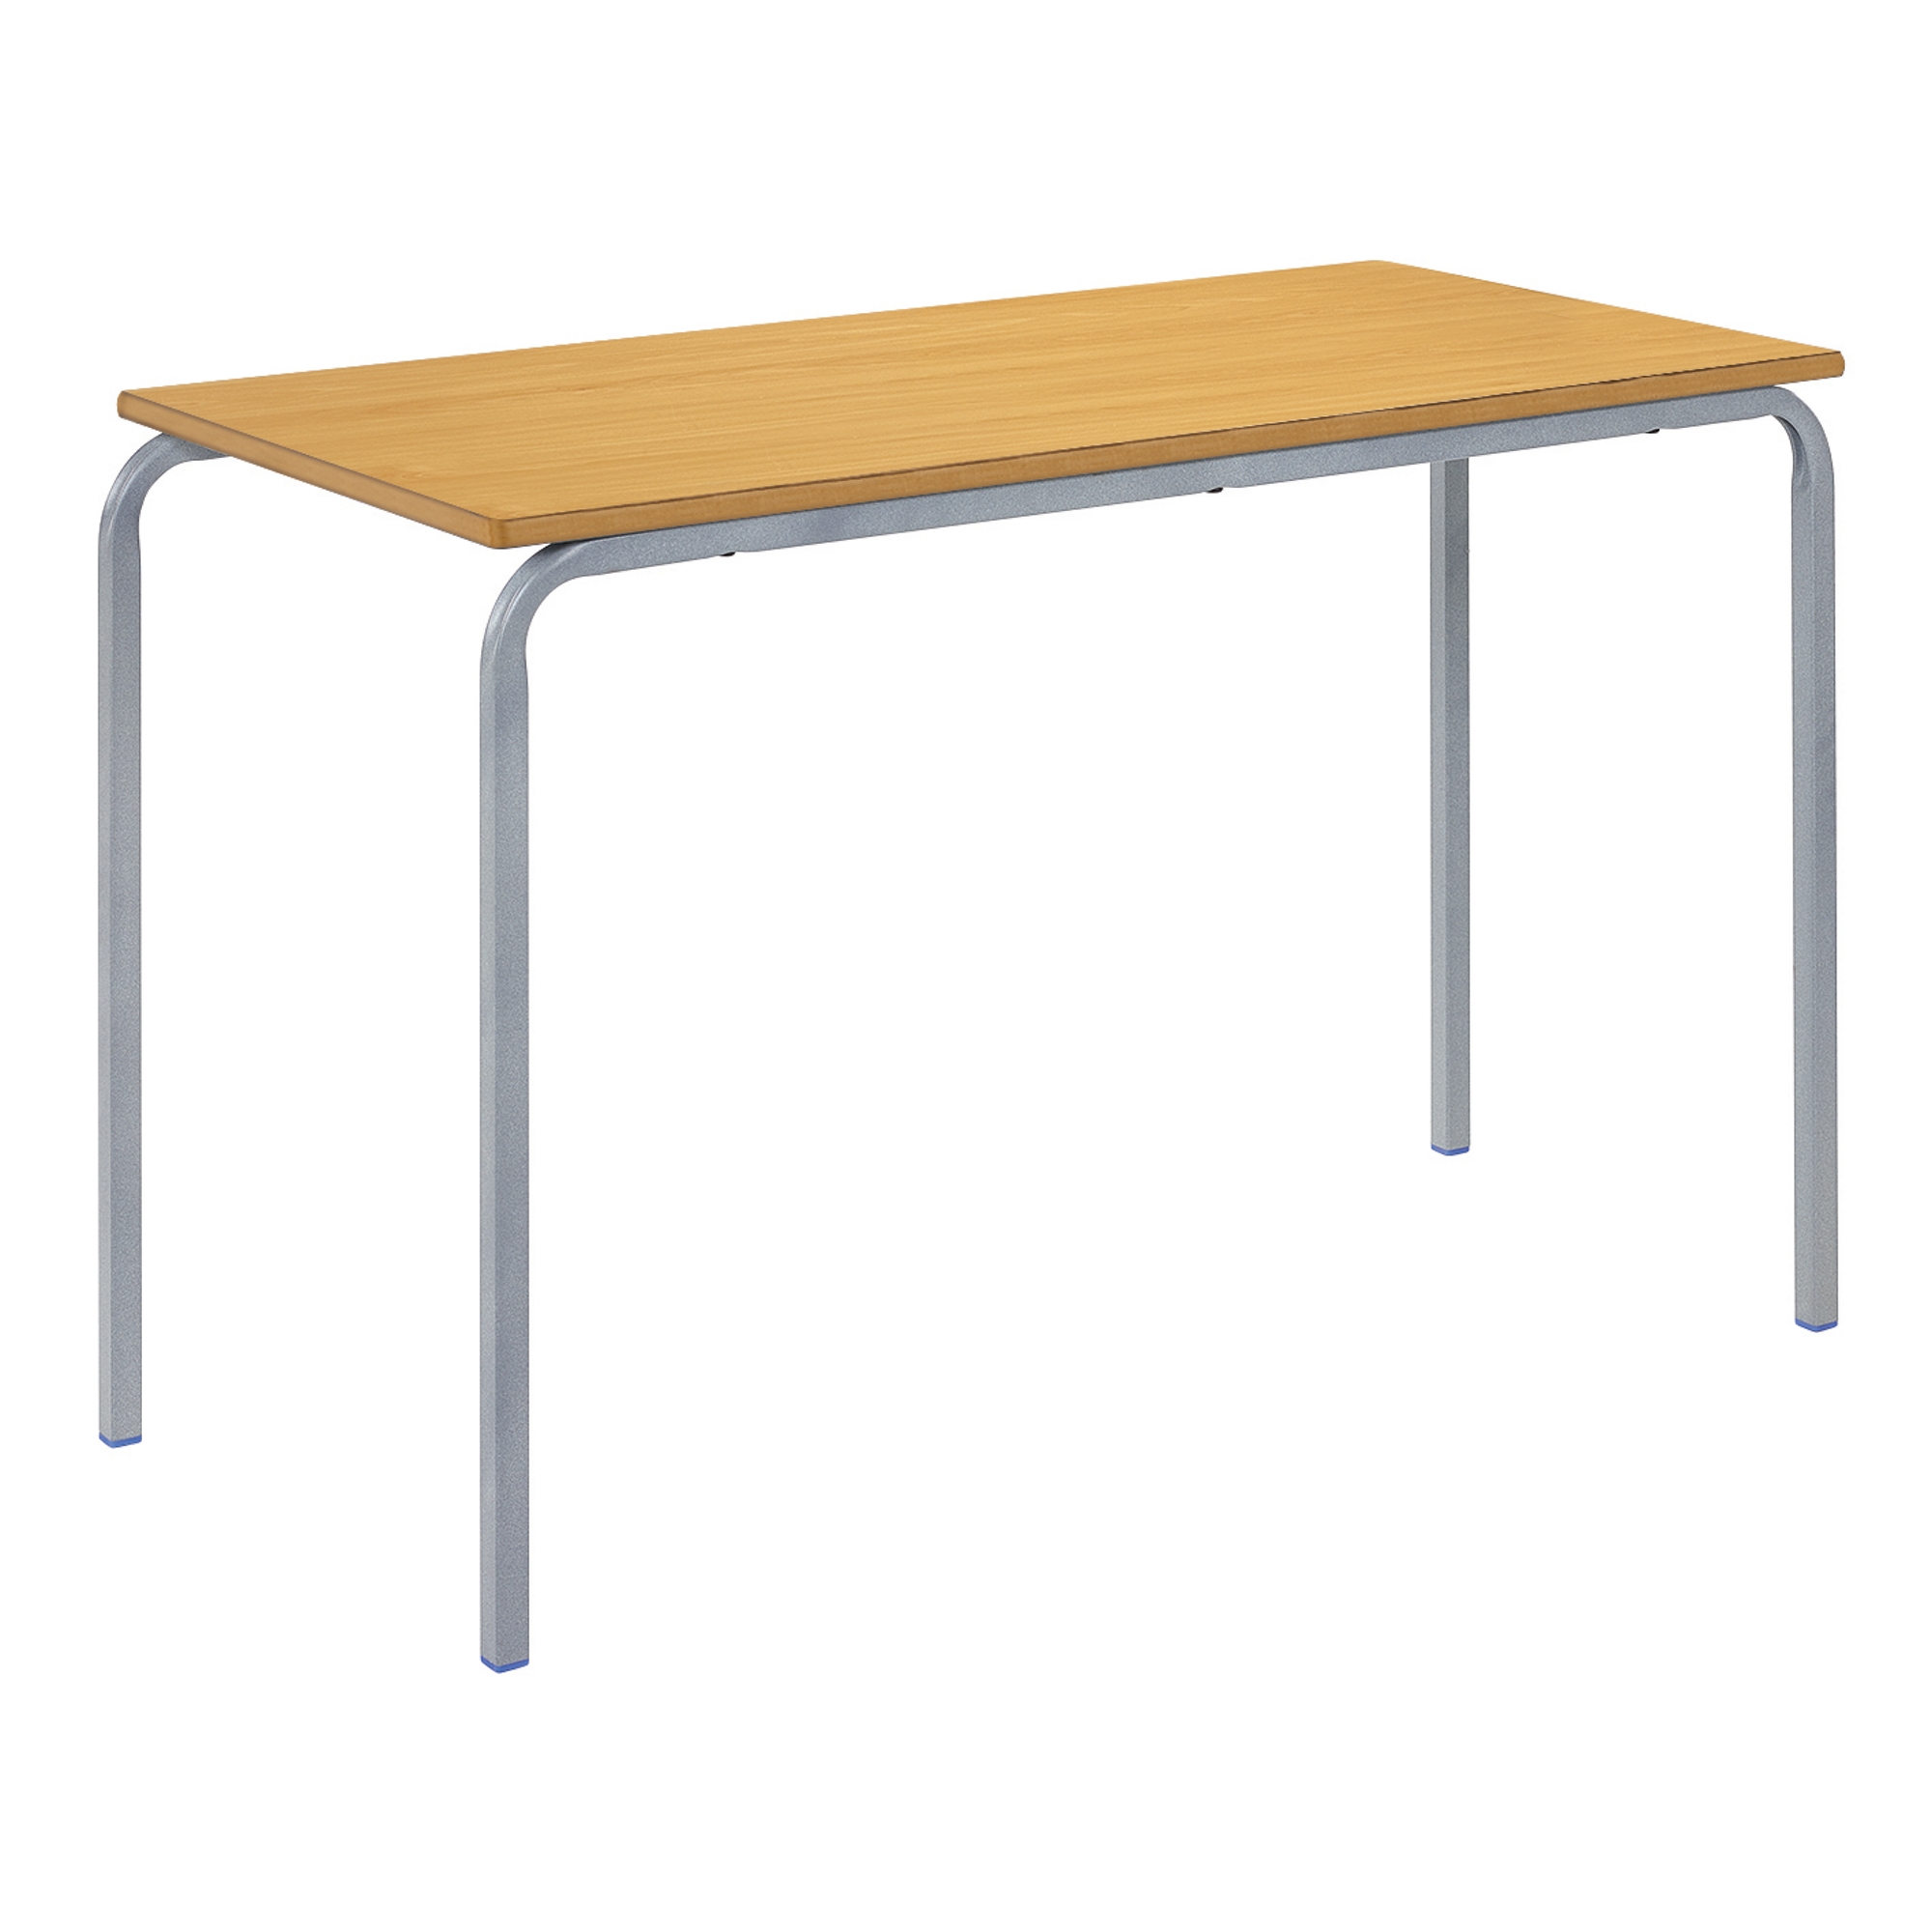 Classmates Rectangular Crushed Bent Classroom Table - 1100 x 550 x 460mm - Beech